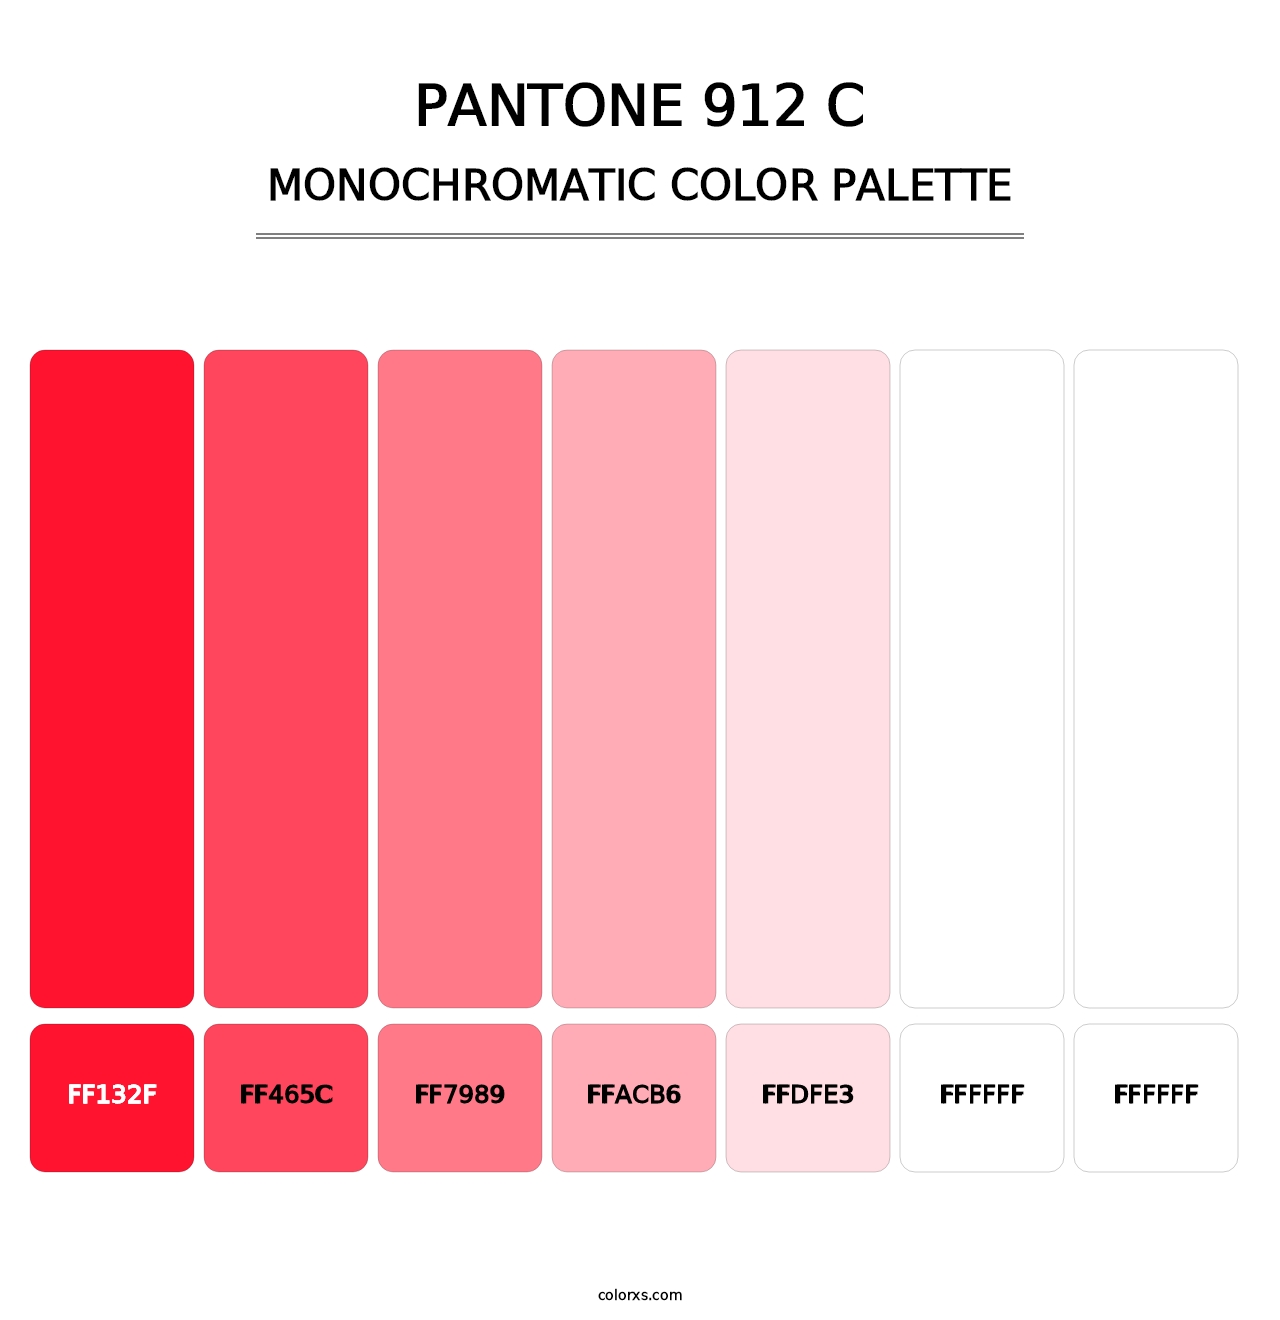 PANTONE 912 C - Monochromatic Color Palette